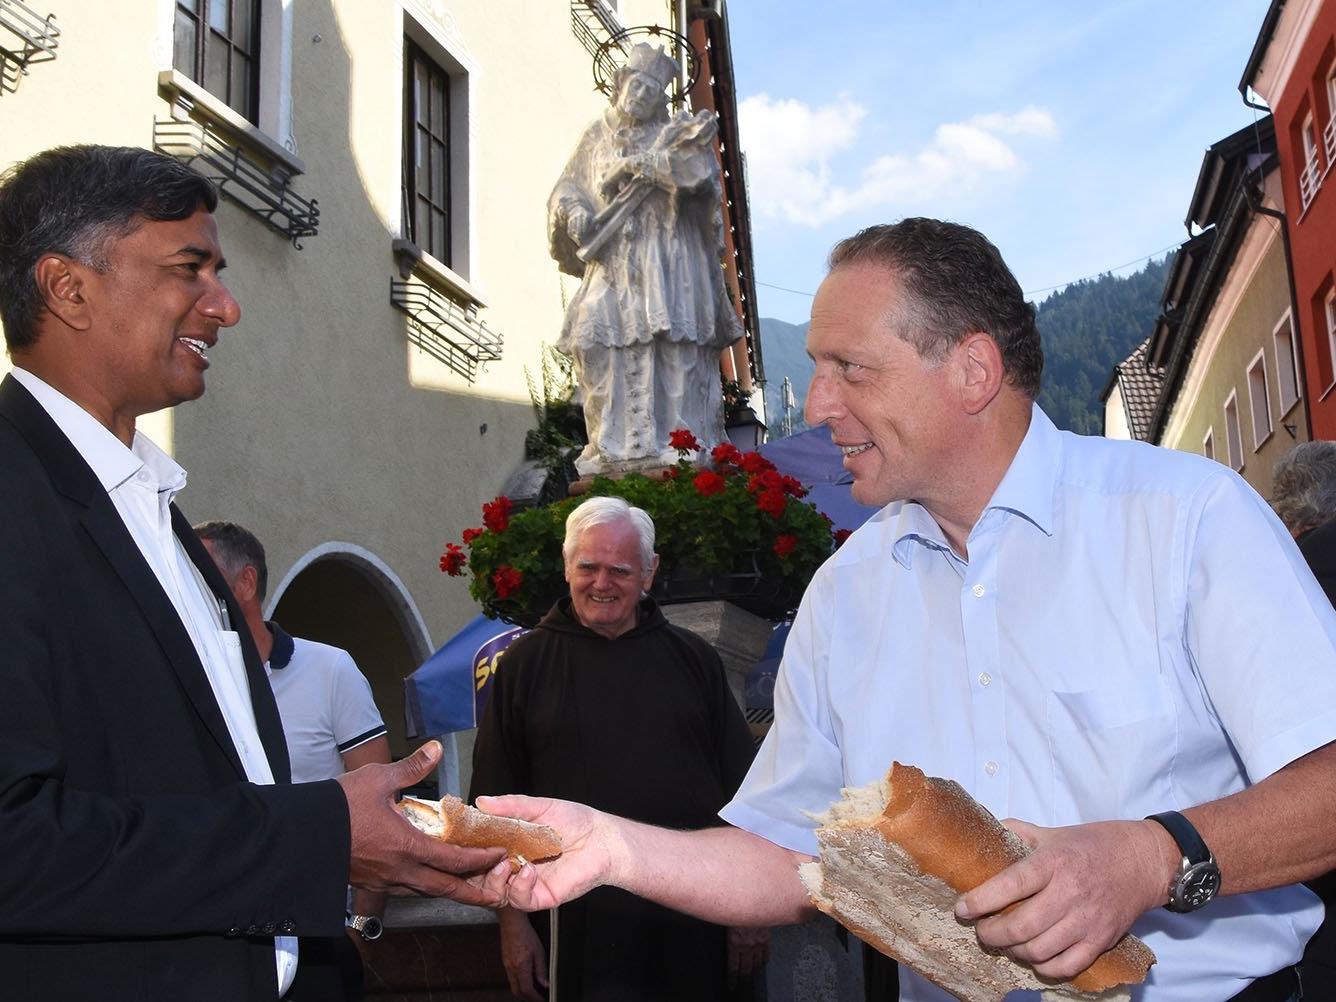 Der Arbeiterkammerpräsident reicht dem Bludenzer Kaplan ein Stück Brot.